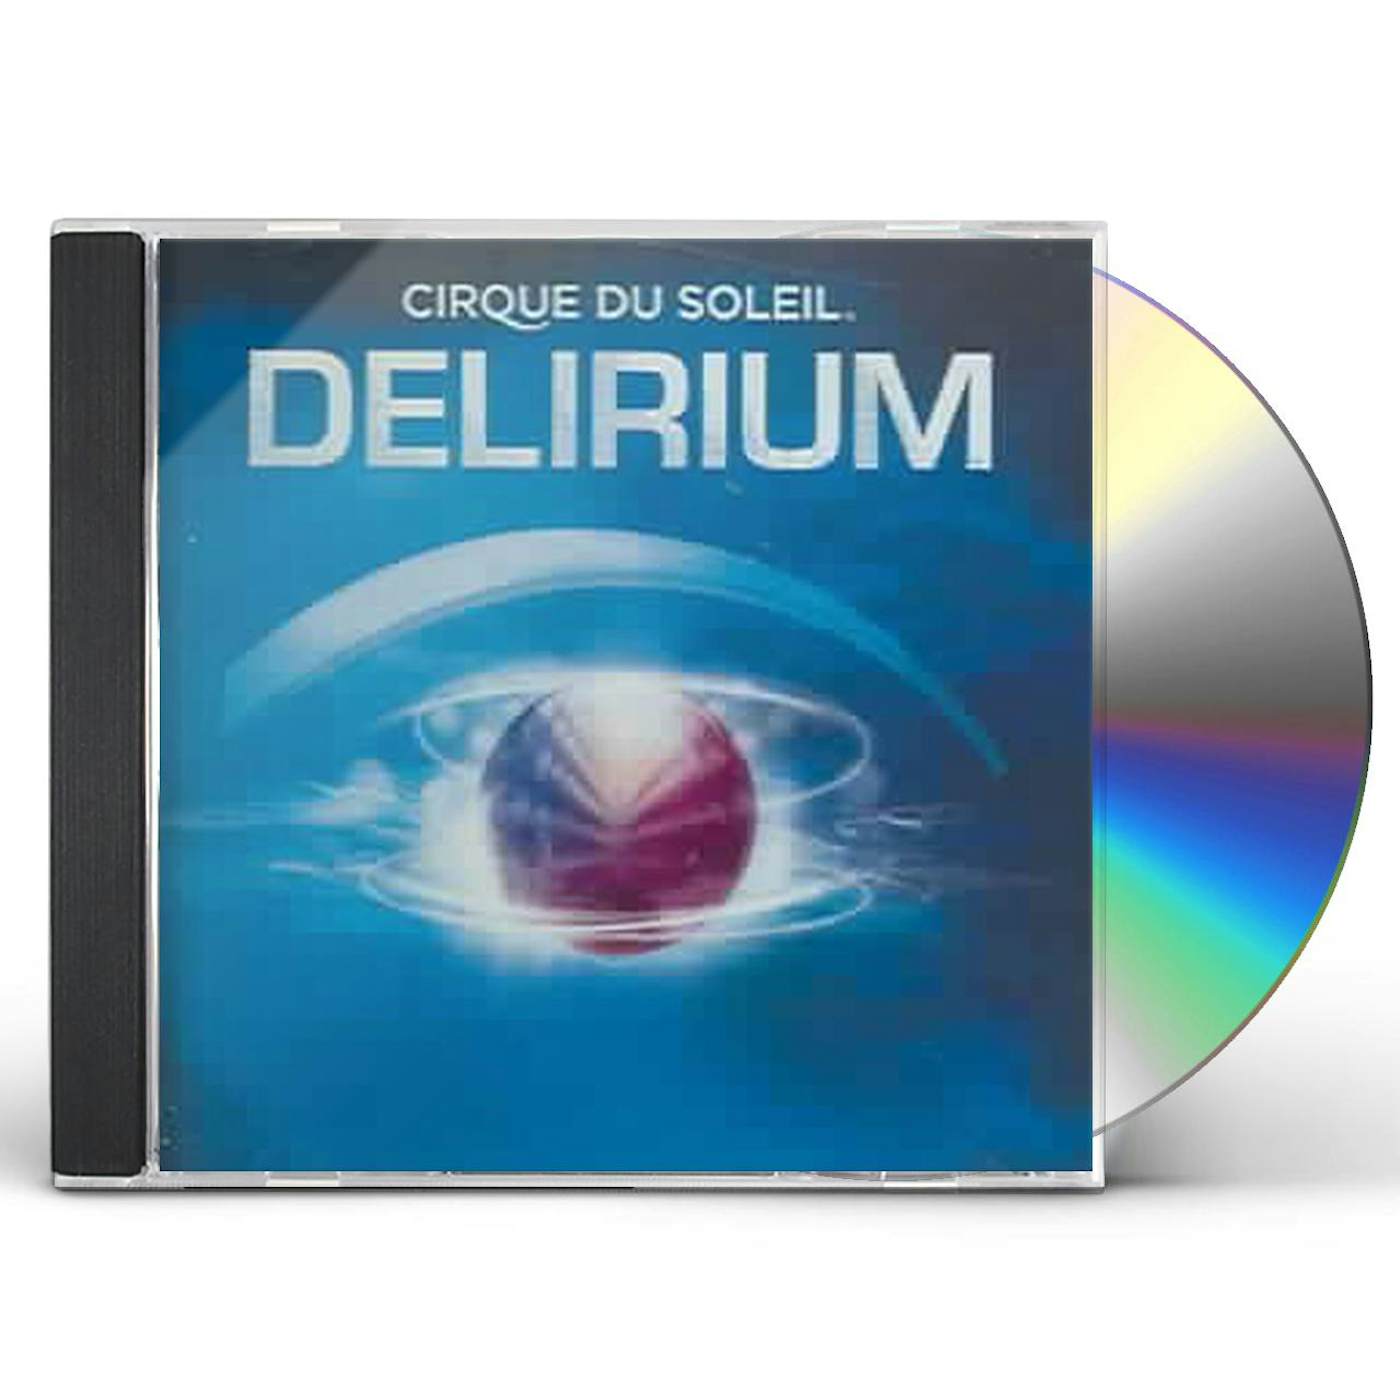 Cirque du Soleil DELIRIUM CD